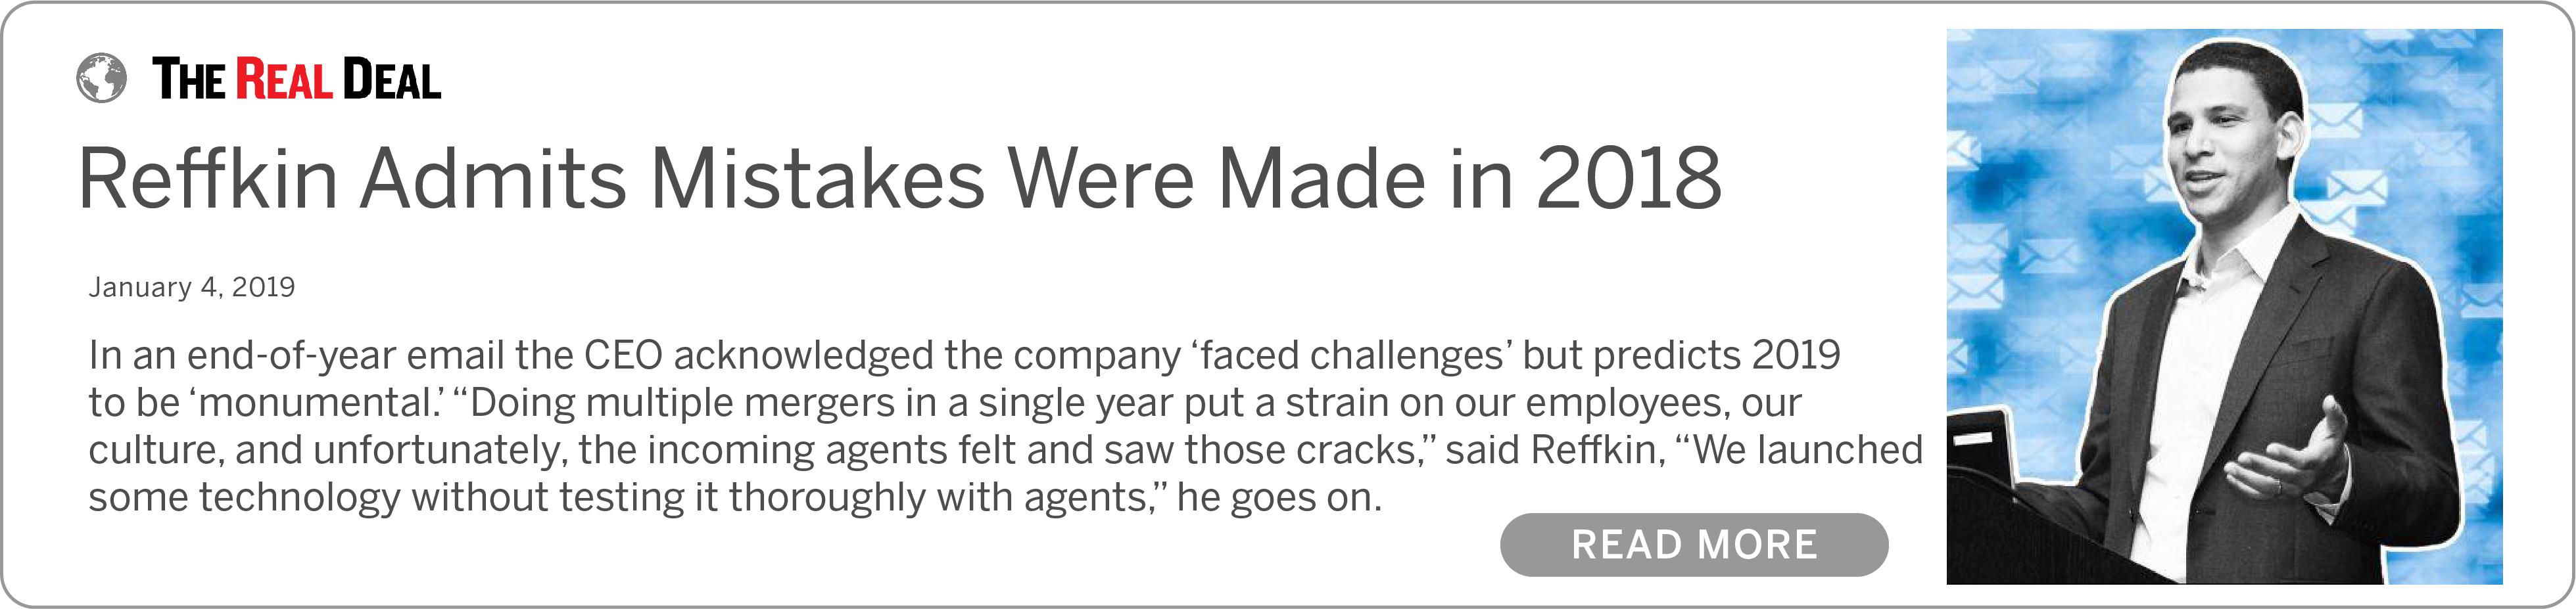 Reffkin Admits Mistakes Were Made in 2018